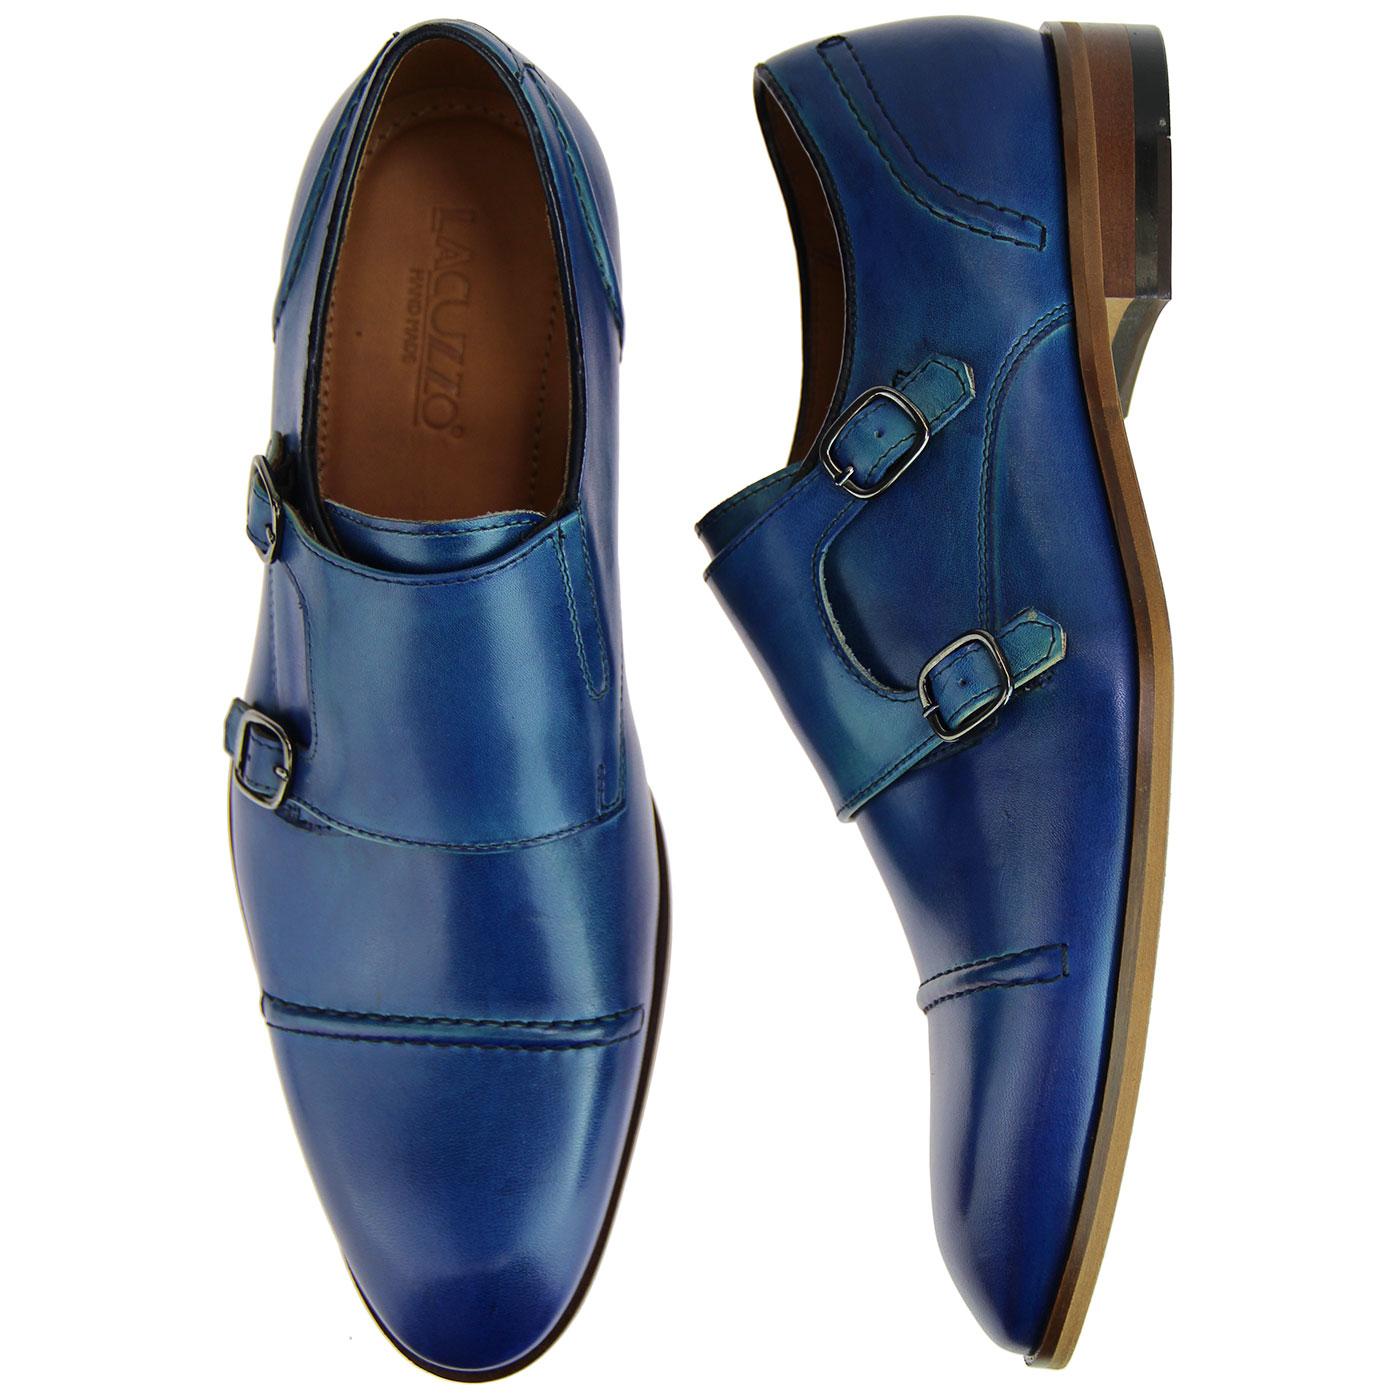 LACUZZO Men's Retro Mod Double Monk Strap Shoes in Blue